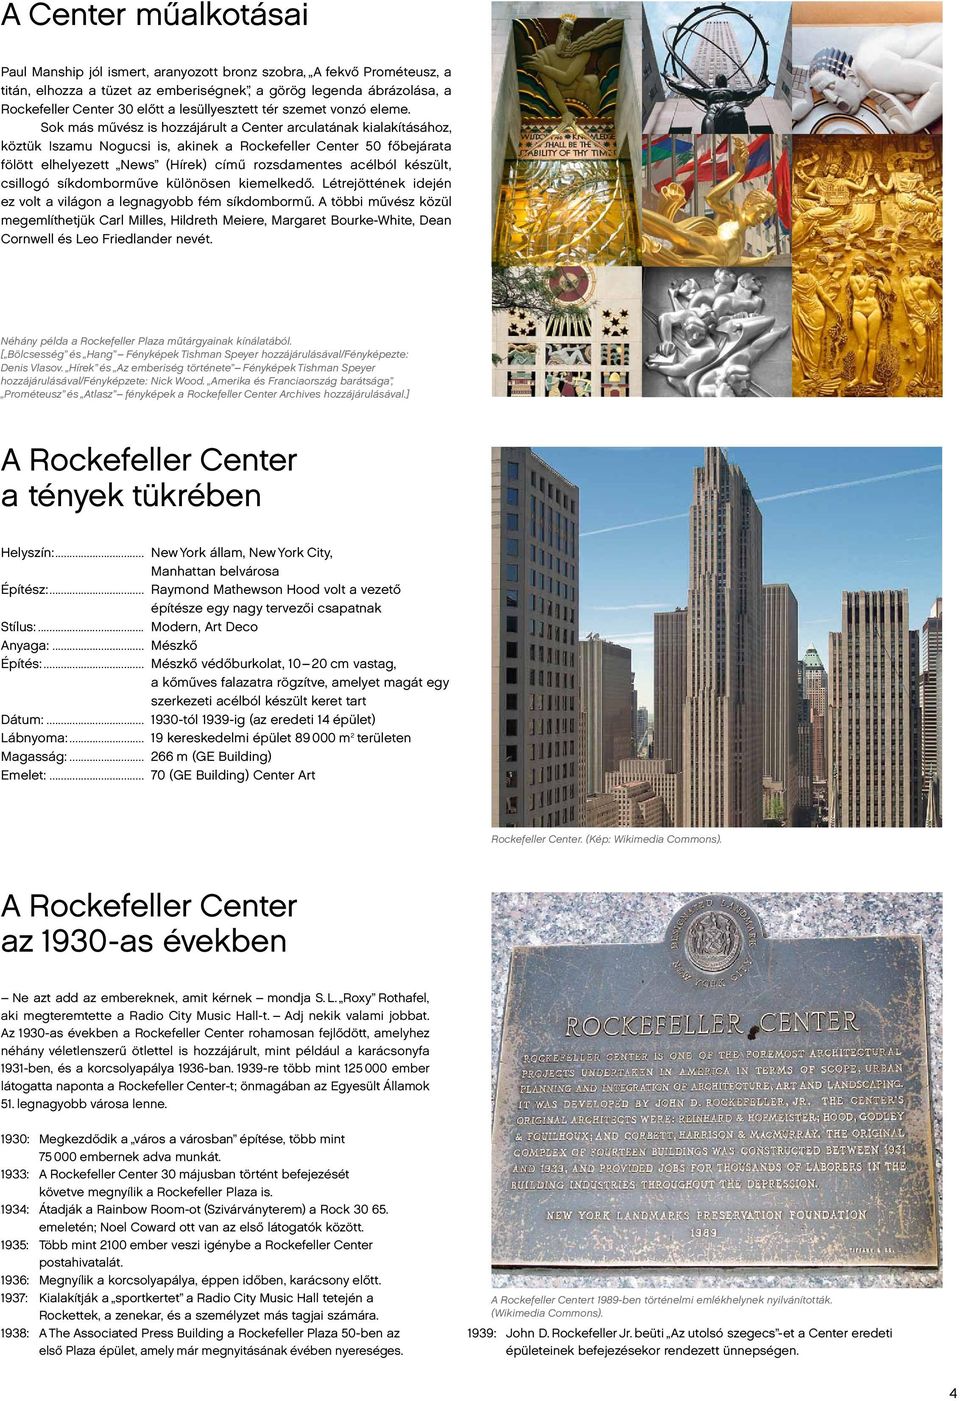 Sok más művész is hozzájárult a Center arculatának kialakításához, köztük Iszamu Nogucsi is, akinek a Rockefeller Center 50 főbejárata fölött elhelyezett News (Hírek) című rozsdamentes acélból